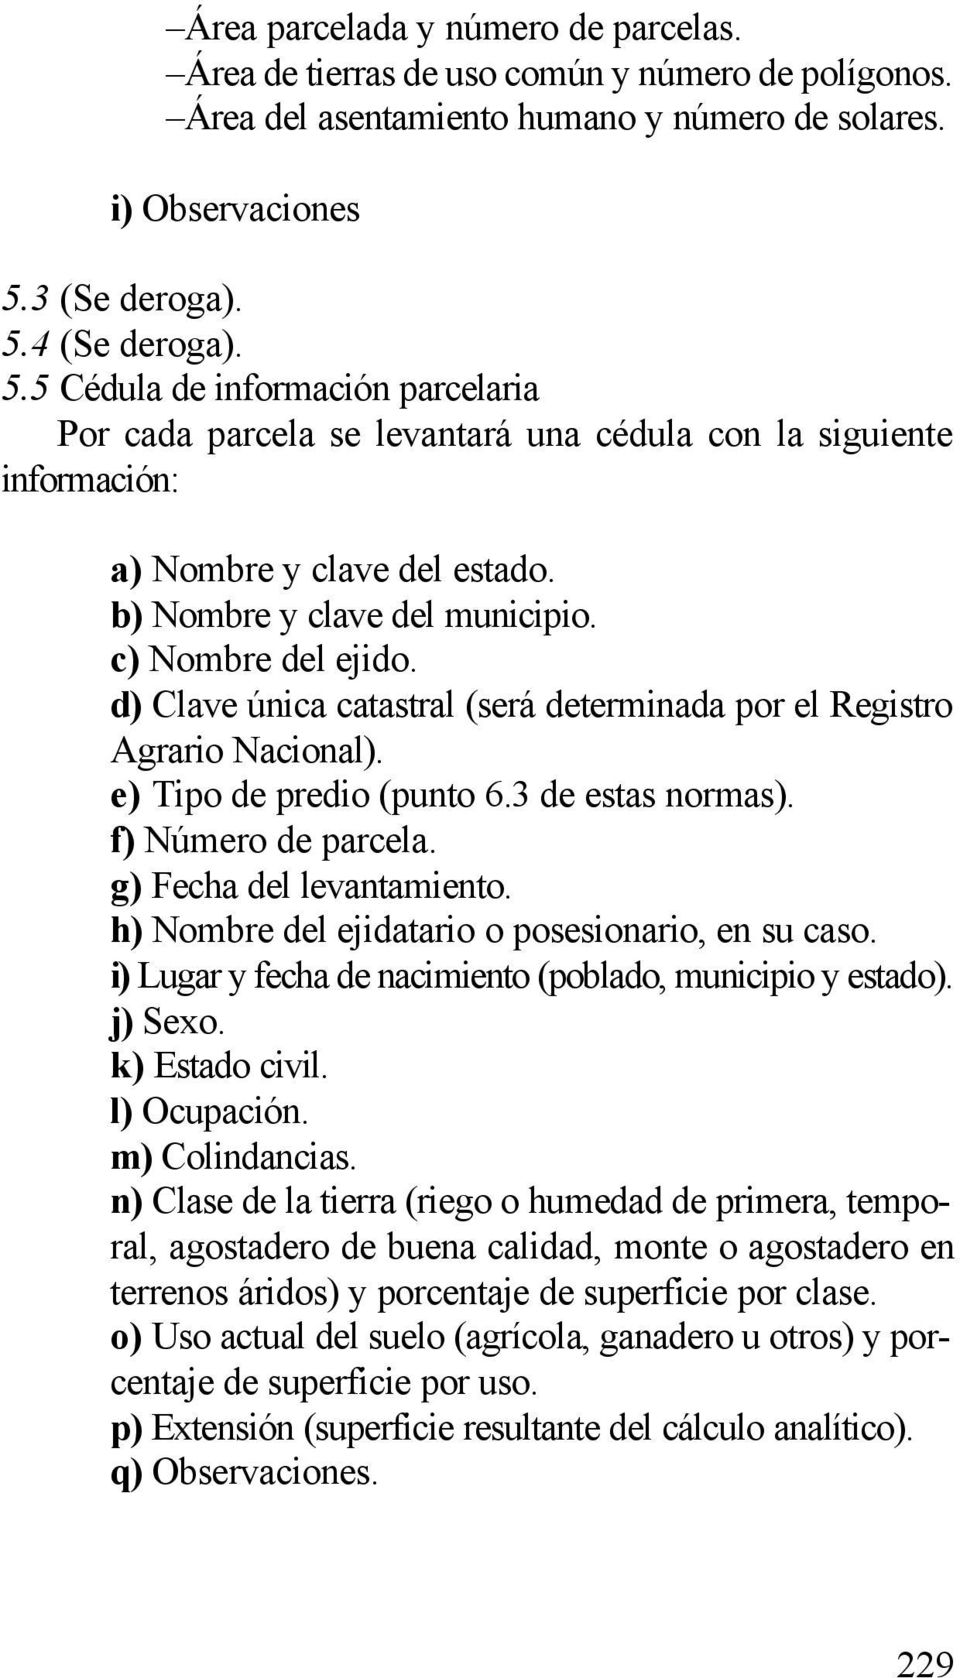 b) Nombre y clave del municipio. c) Nombre del ejido. d) Clave única catastral (será determinada por el Registro Agrario Nacional). e) Tipo de predio (punto 6.3 de estas normas). f) Número de parcela.